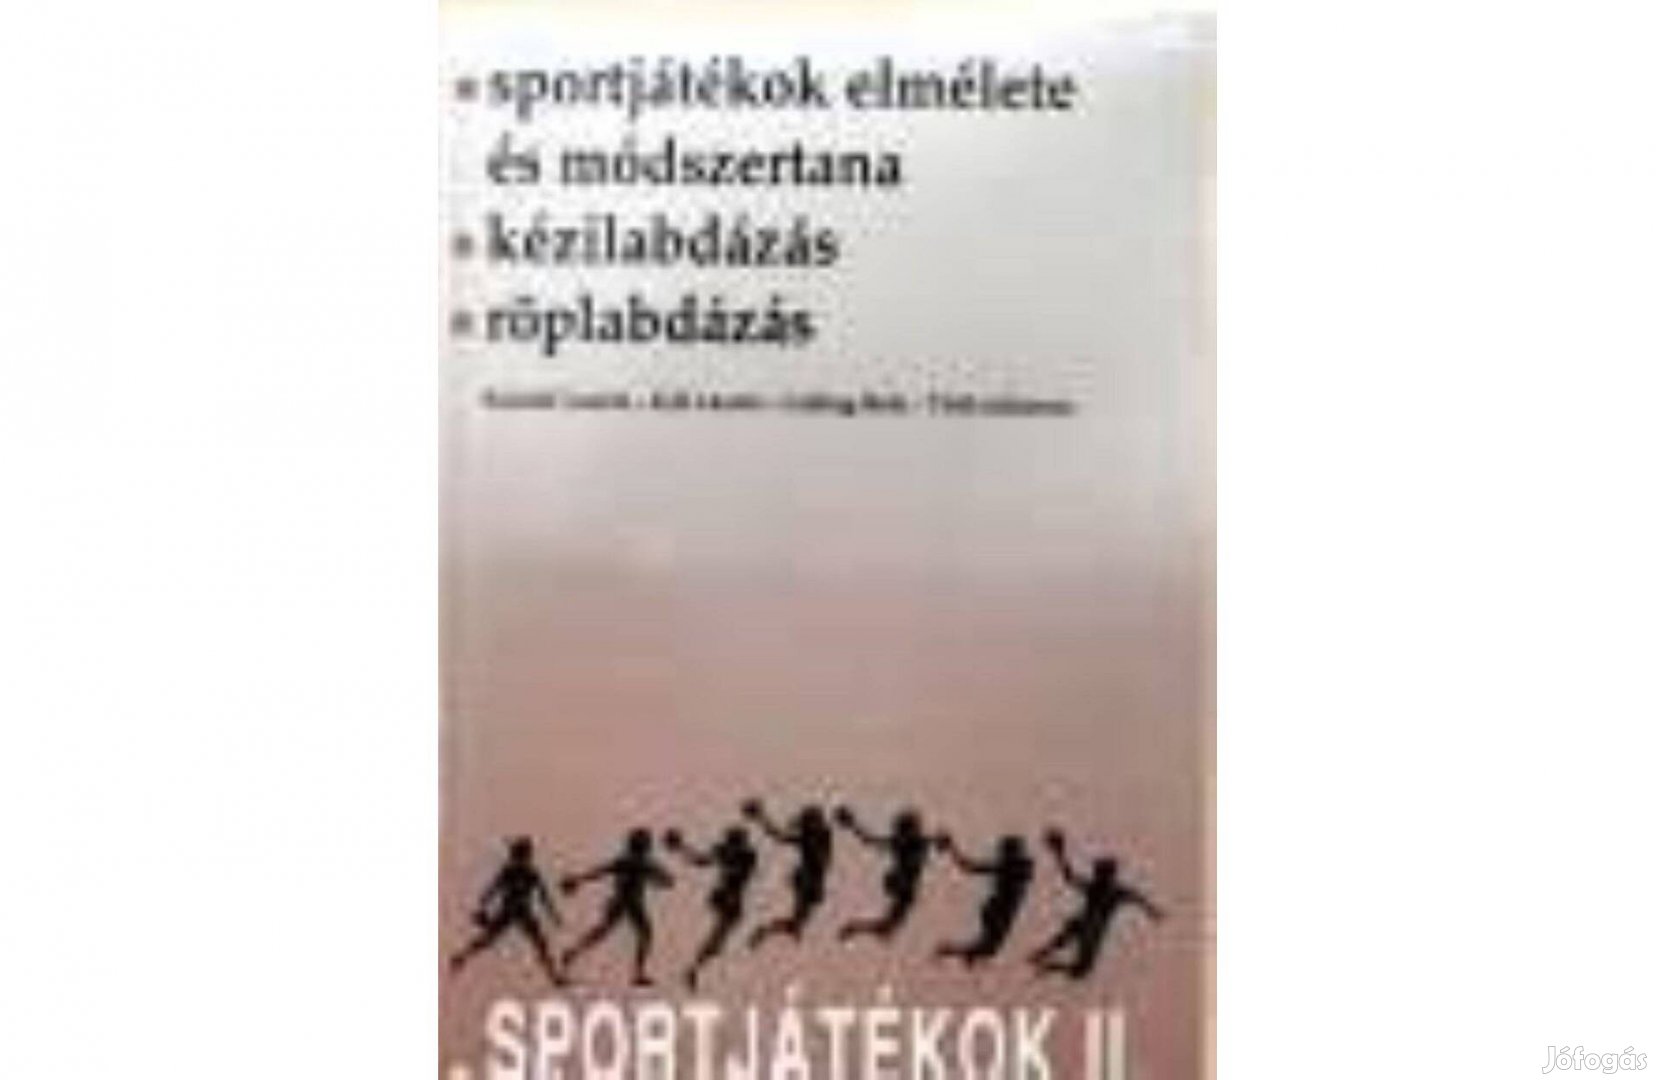 Sportjátékok II./Sportjátékok Elmélete És Módszertana/Kézilabdázás/Röp